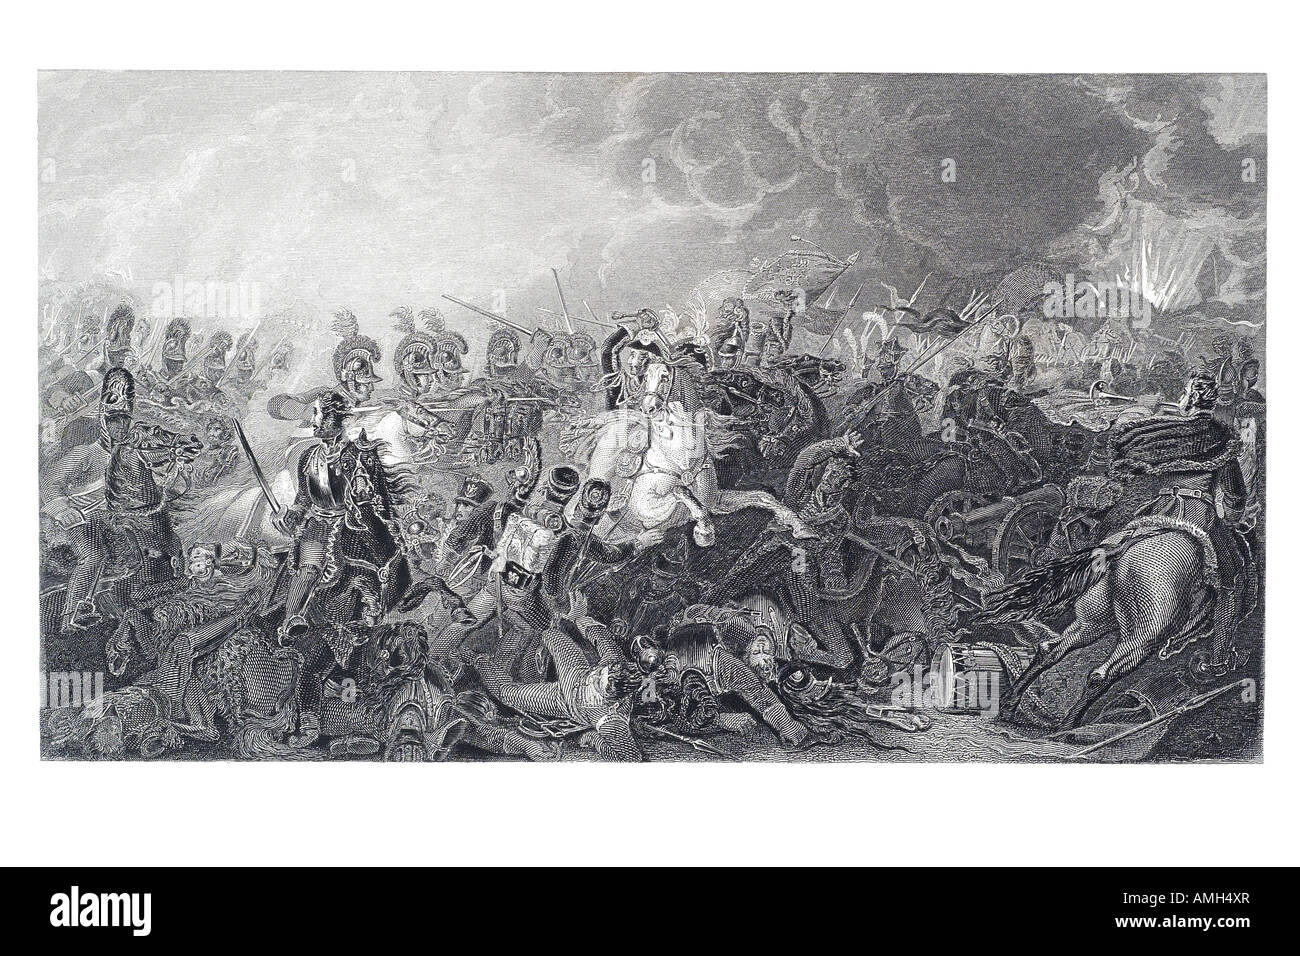 Carica decisiva vita delle guardie battaglia Waterloo Belgio 18 giugno 1815 cavalli cavalleria mayhem spada lancia canon, Napoleonico guerre Napo Foto Stock